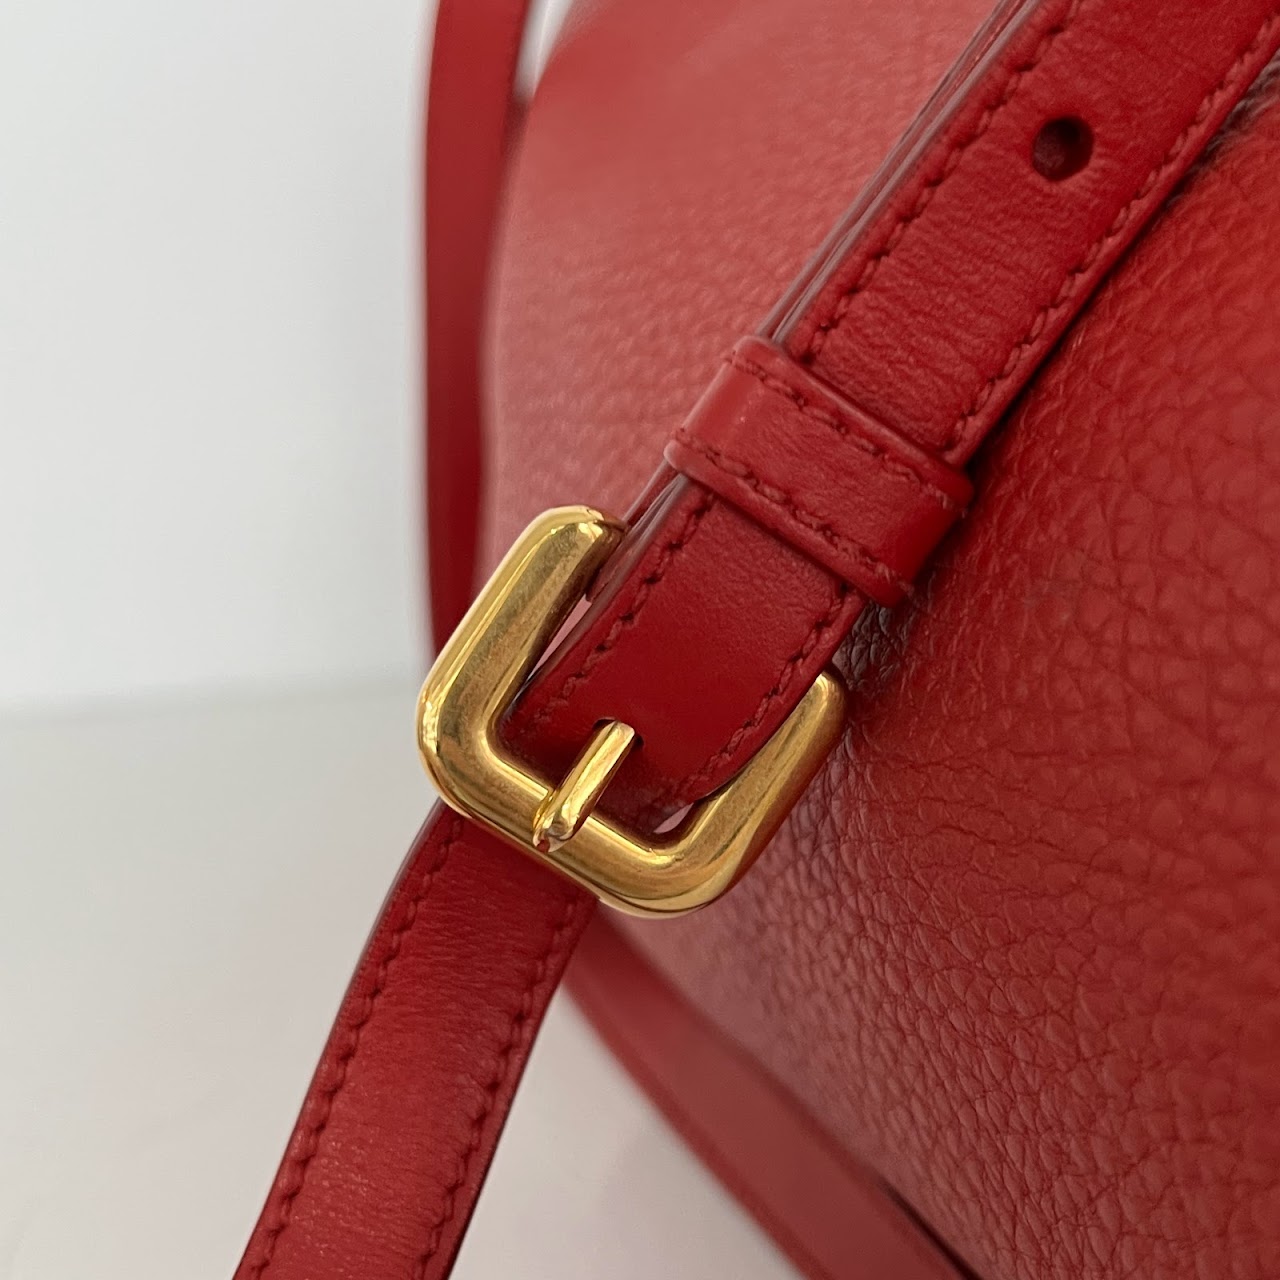 Prada Red Leather Shoulder Bag